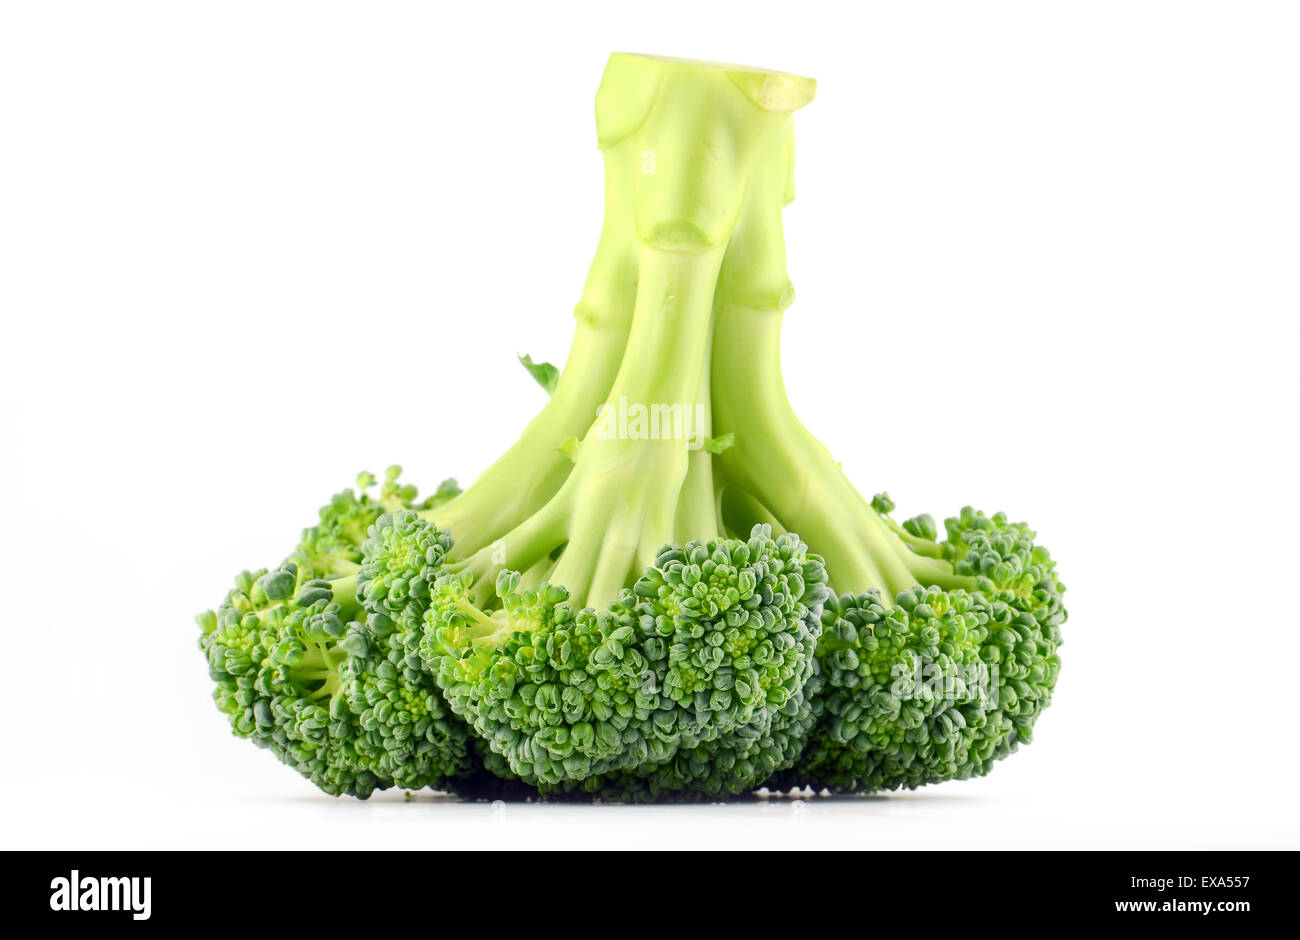 Fresh raw broccoli isolated on white background Stock Photo